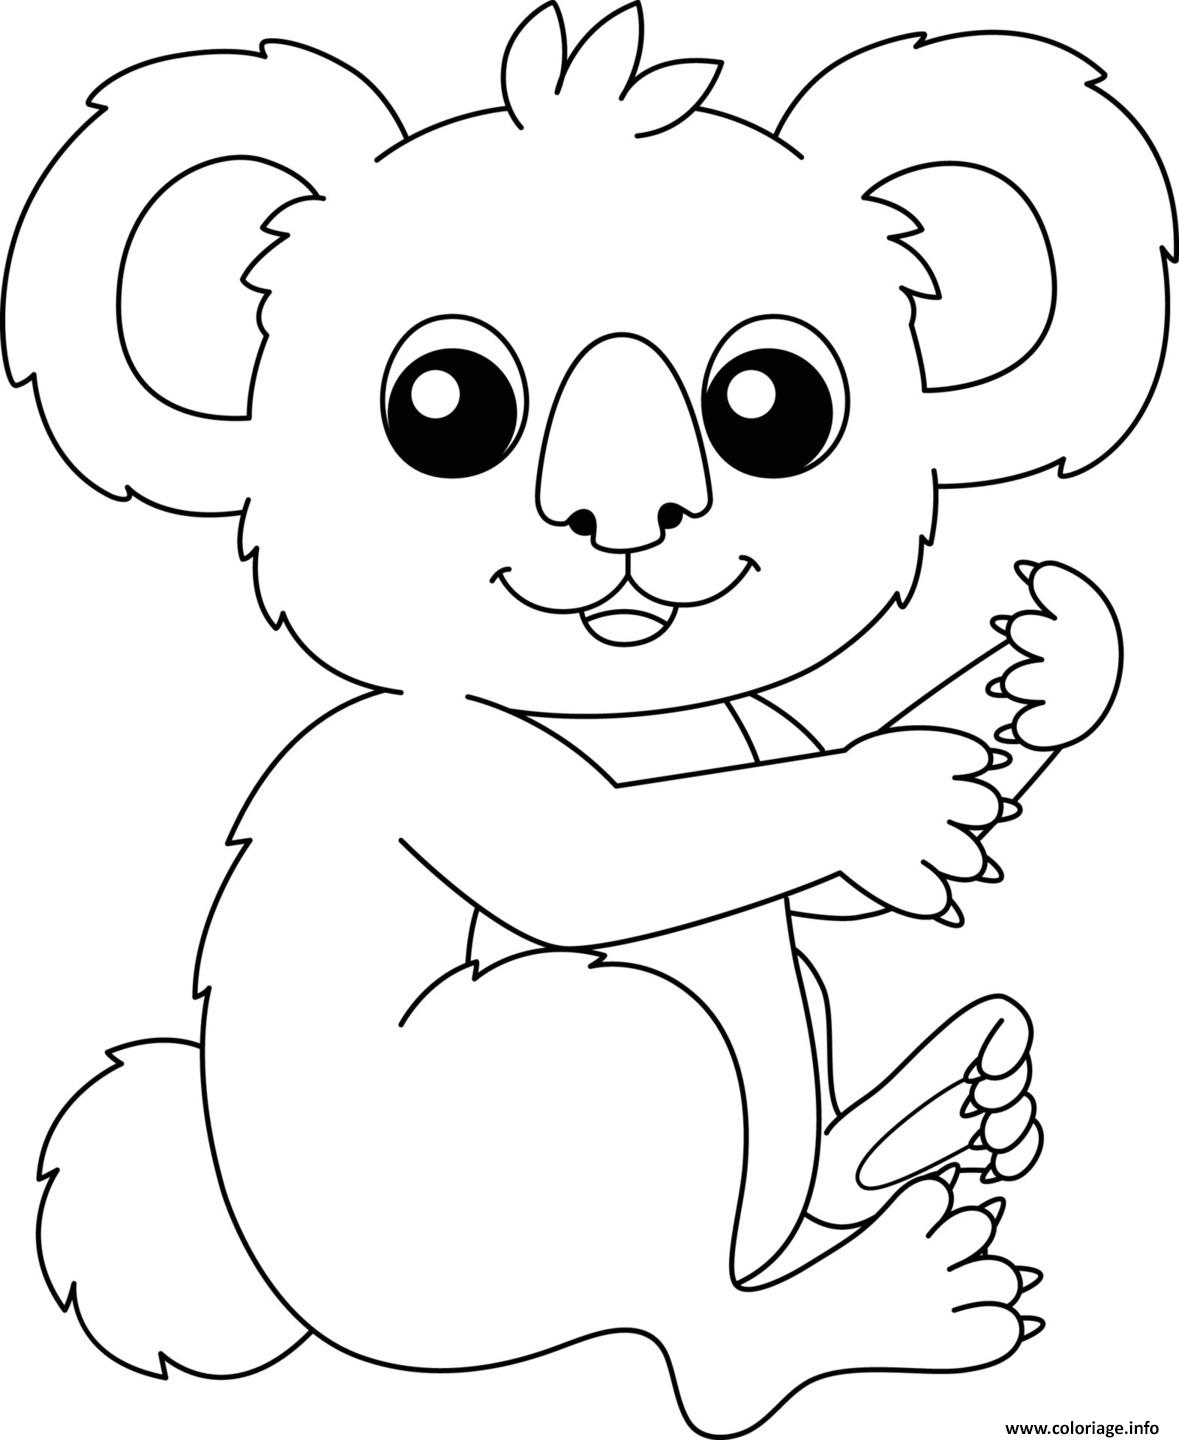 Dessin koala mignon maternelle Coloriage Gratuit à Imprimer